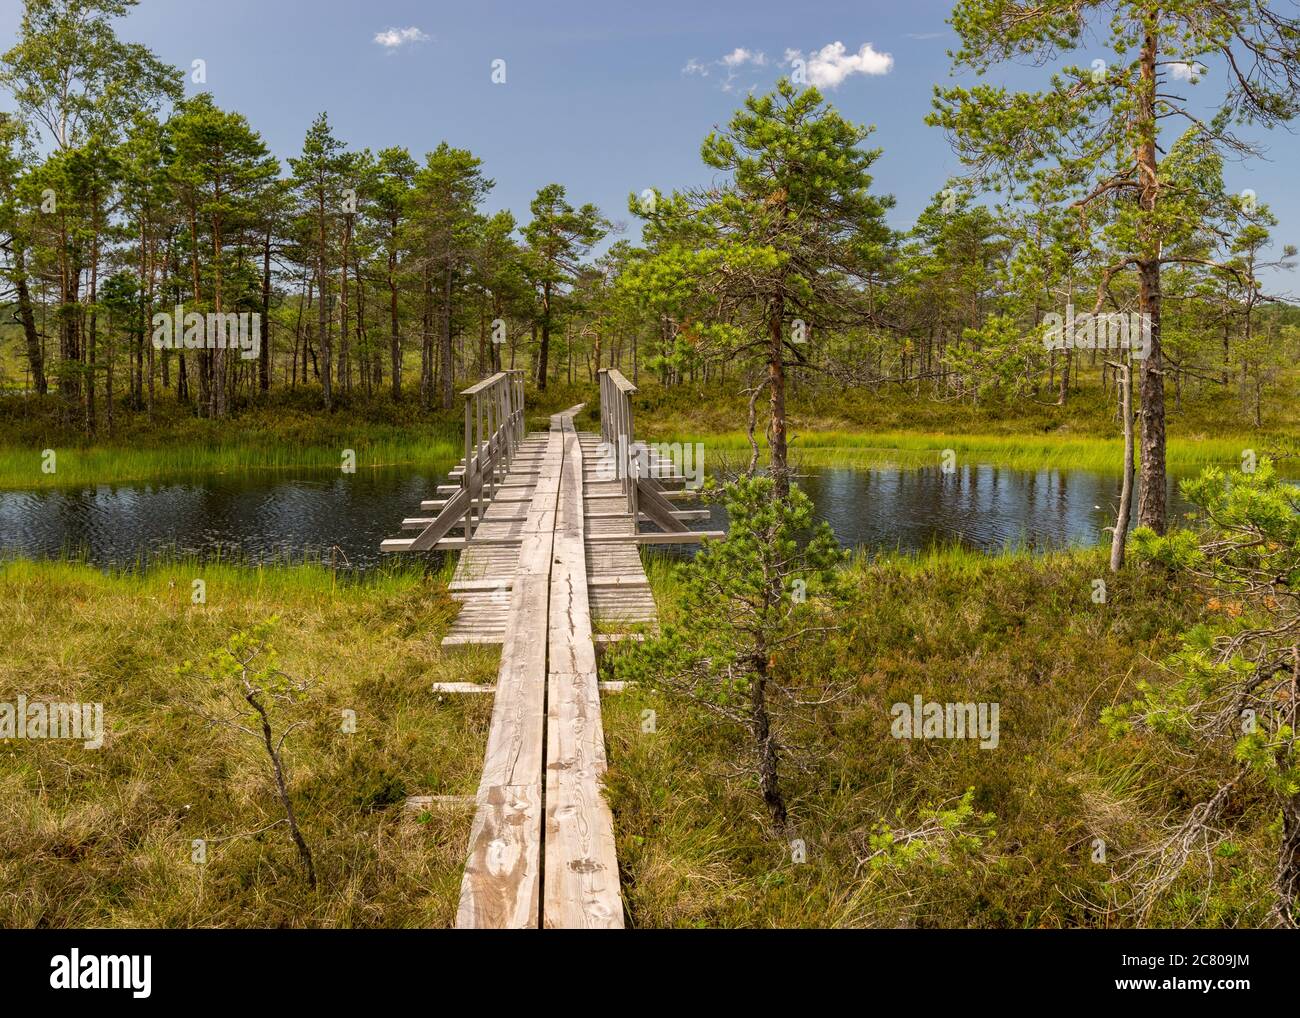 Paesaggio con un ponte pedonale in legno sulle paludi con piccoli pini. Paludi e stagni, una tipica torbiera dell'Estonia occidentale. Nigula natura R Foto Stock